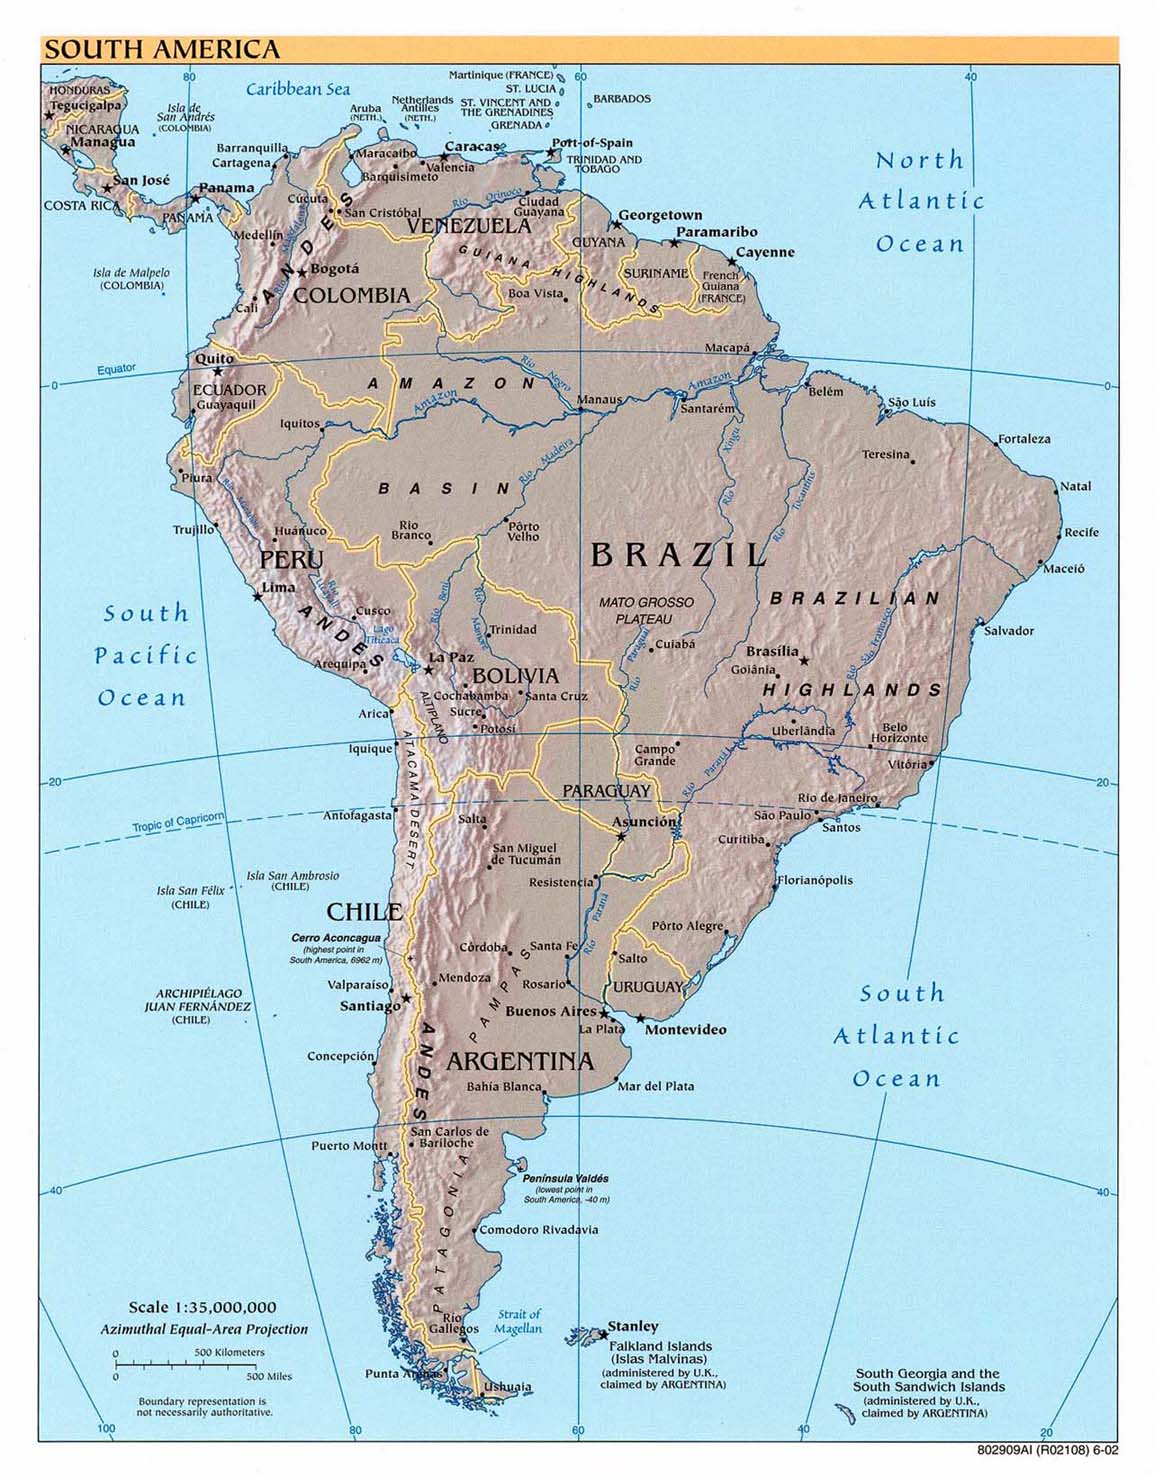 Mapa-Fisico-de-America-del-Sur-2002-851